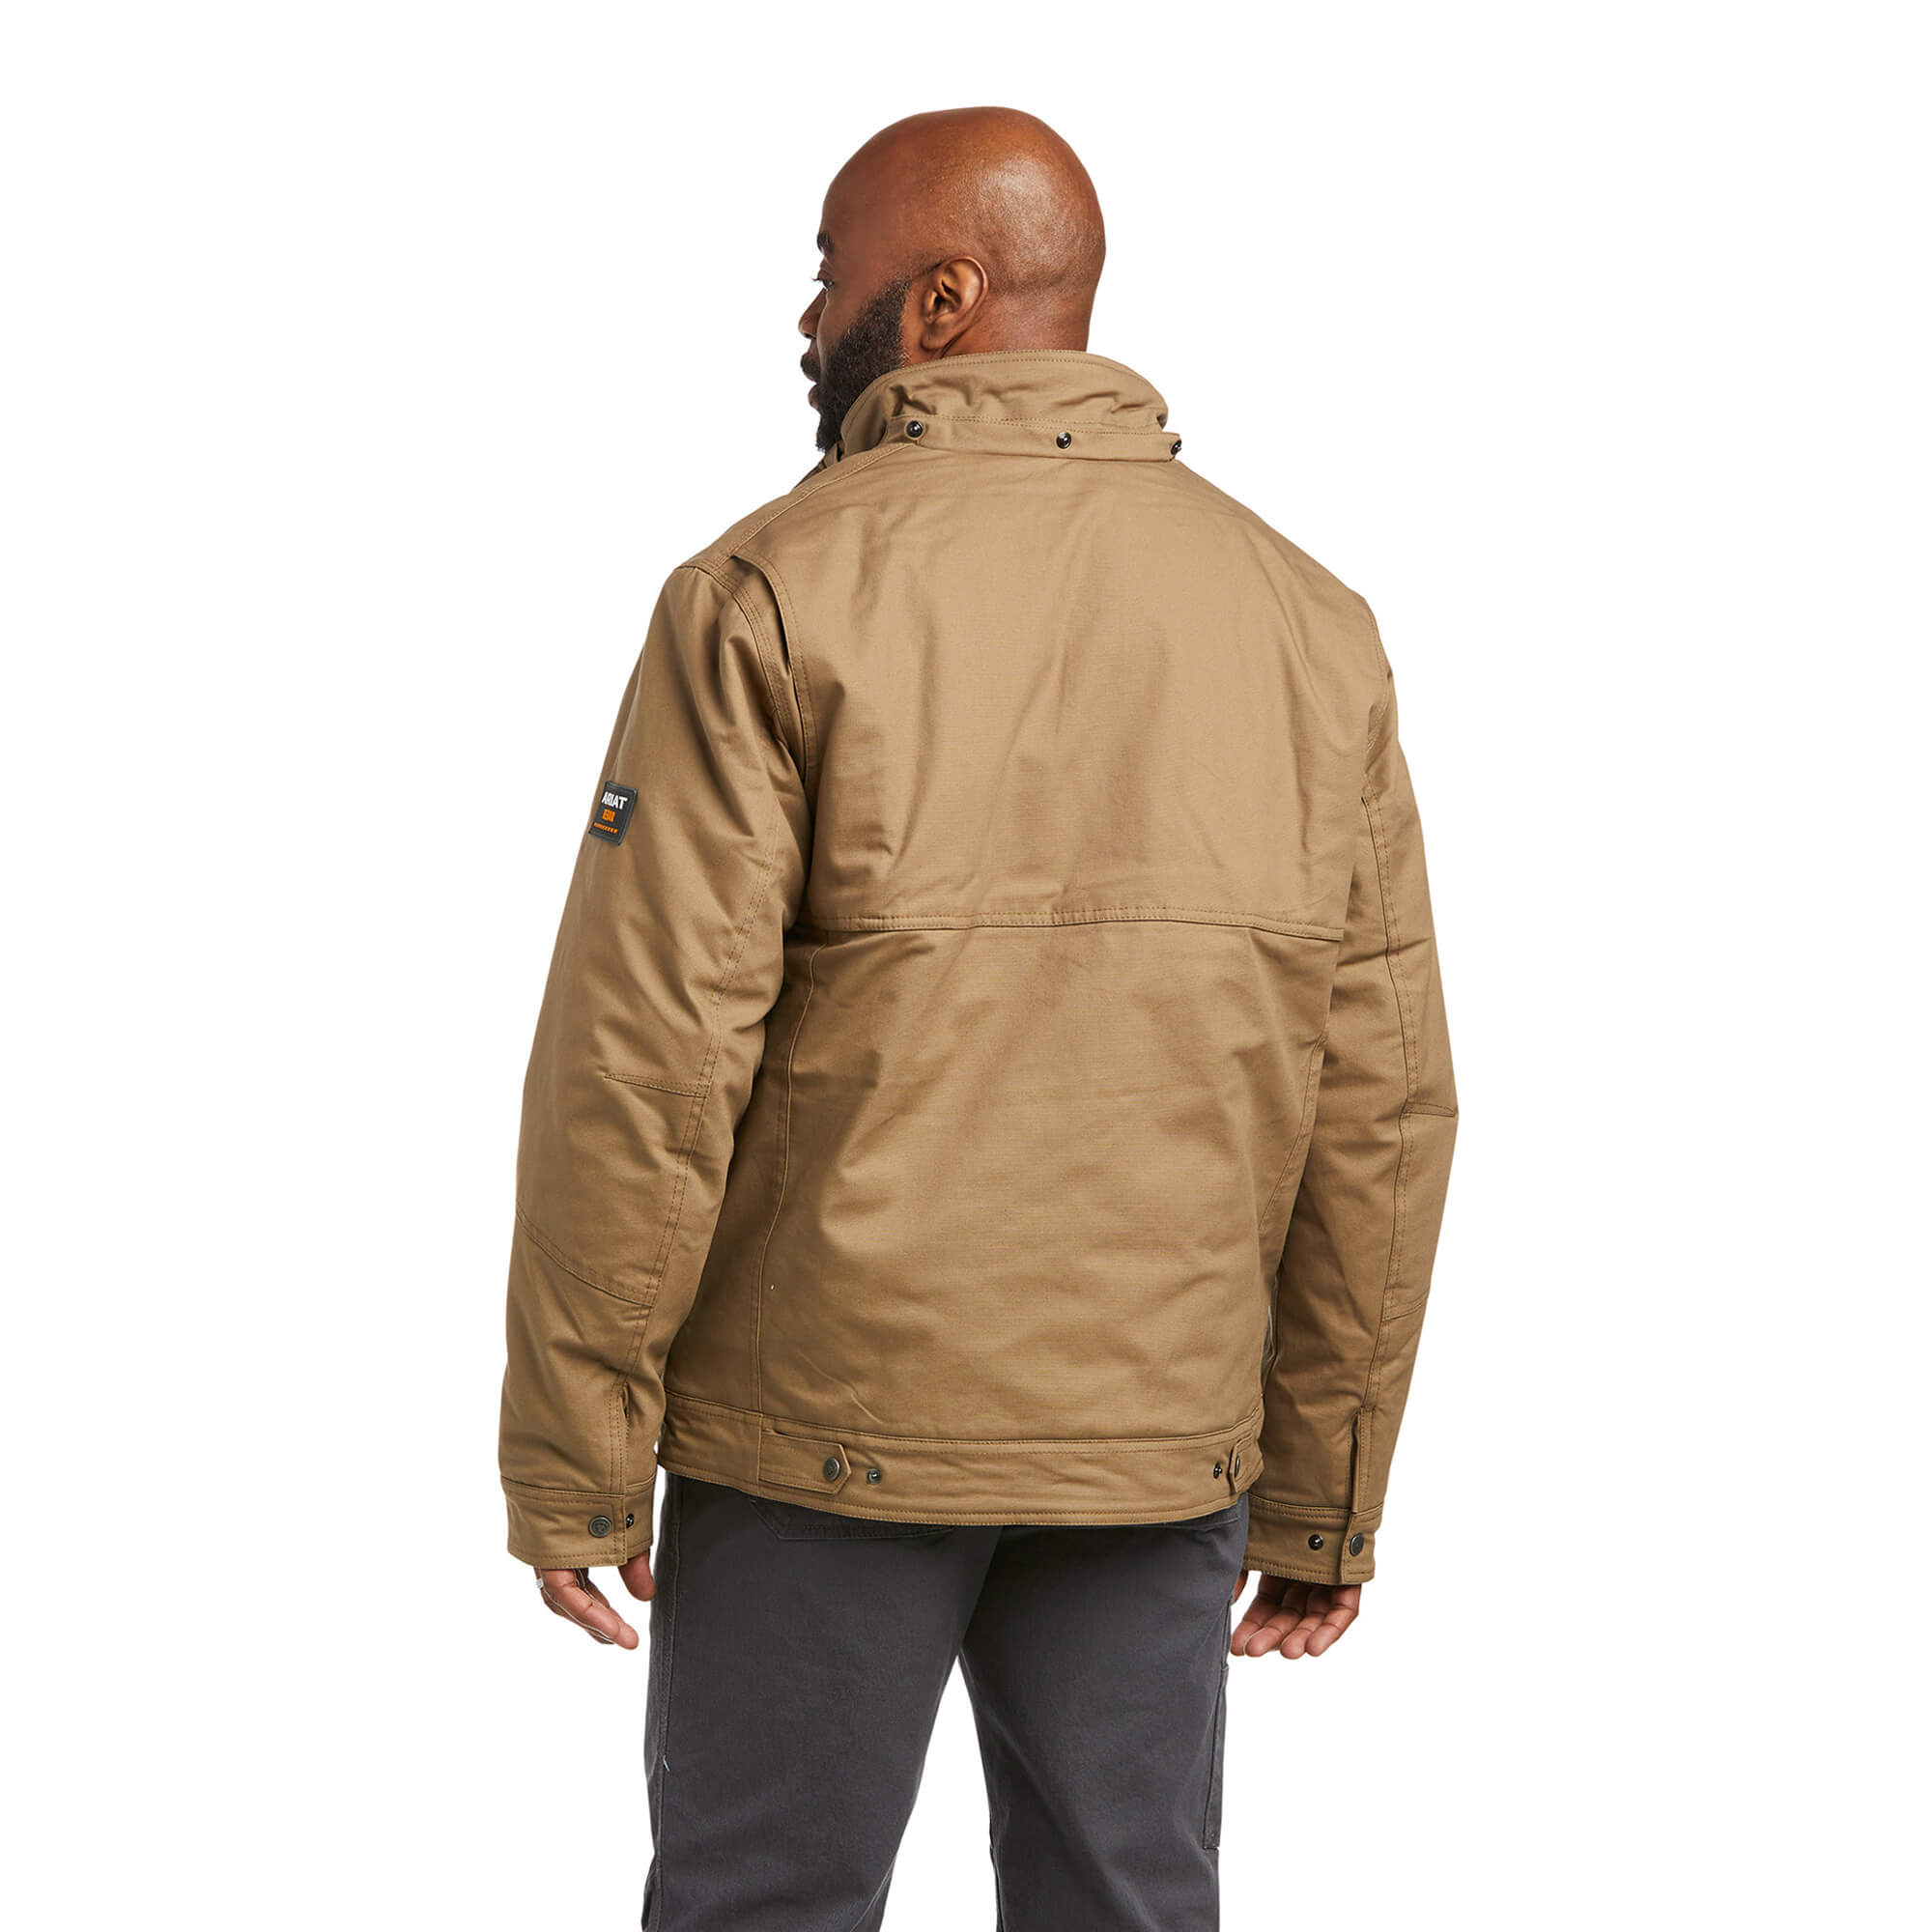 Ariat Rebar MaxMove 2.0 Cordura Water Resistant Insulated Men's Jacket